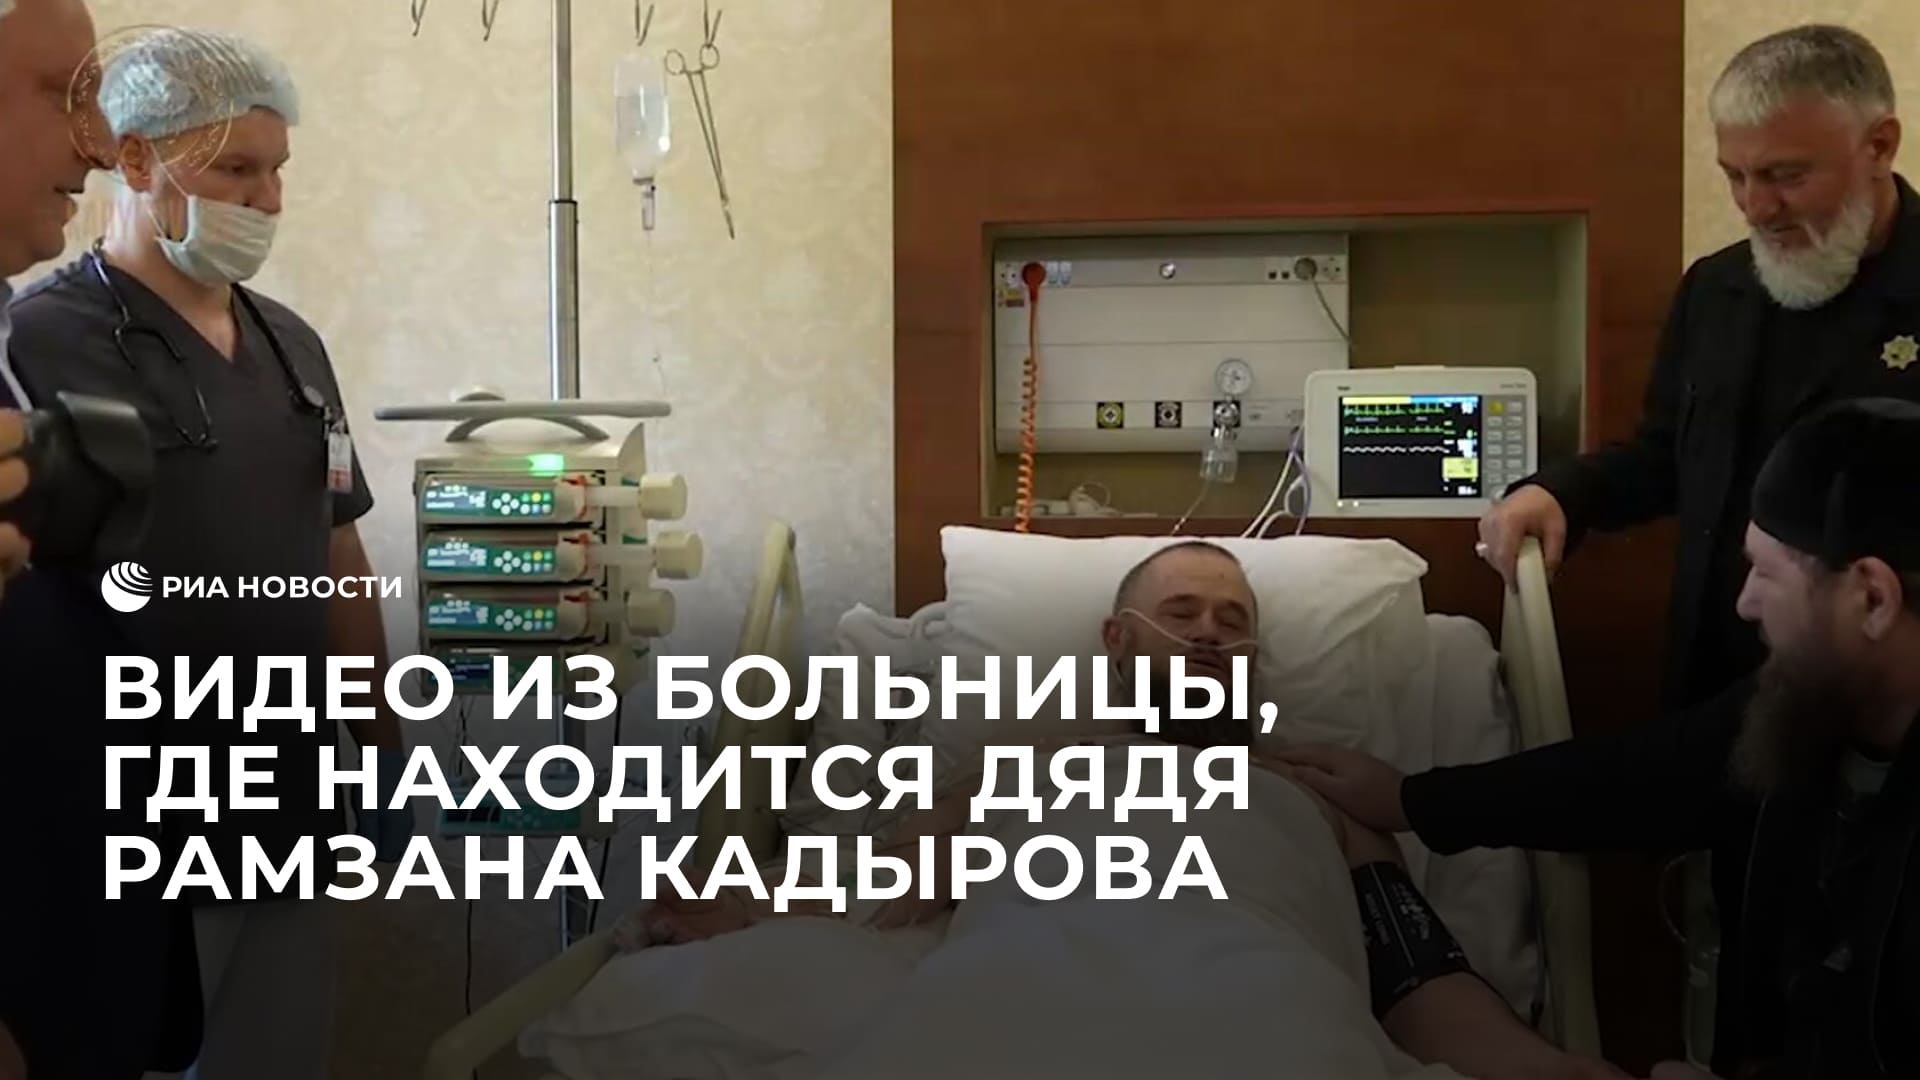 Видео из больницы, где находится дядя Рамзана Кадырова